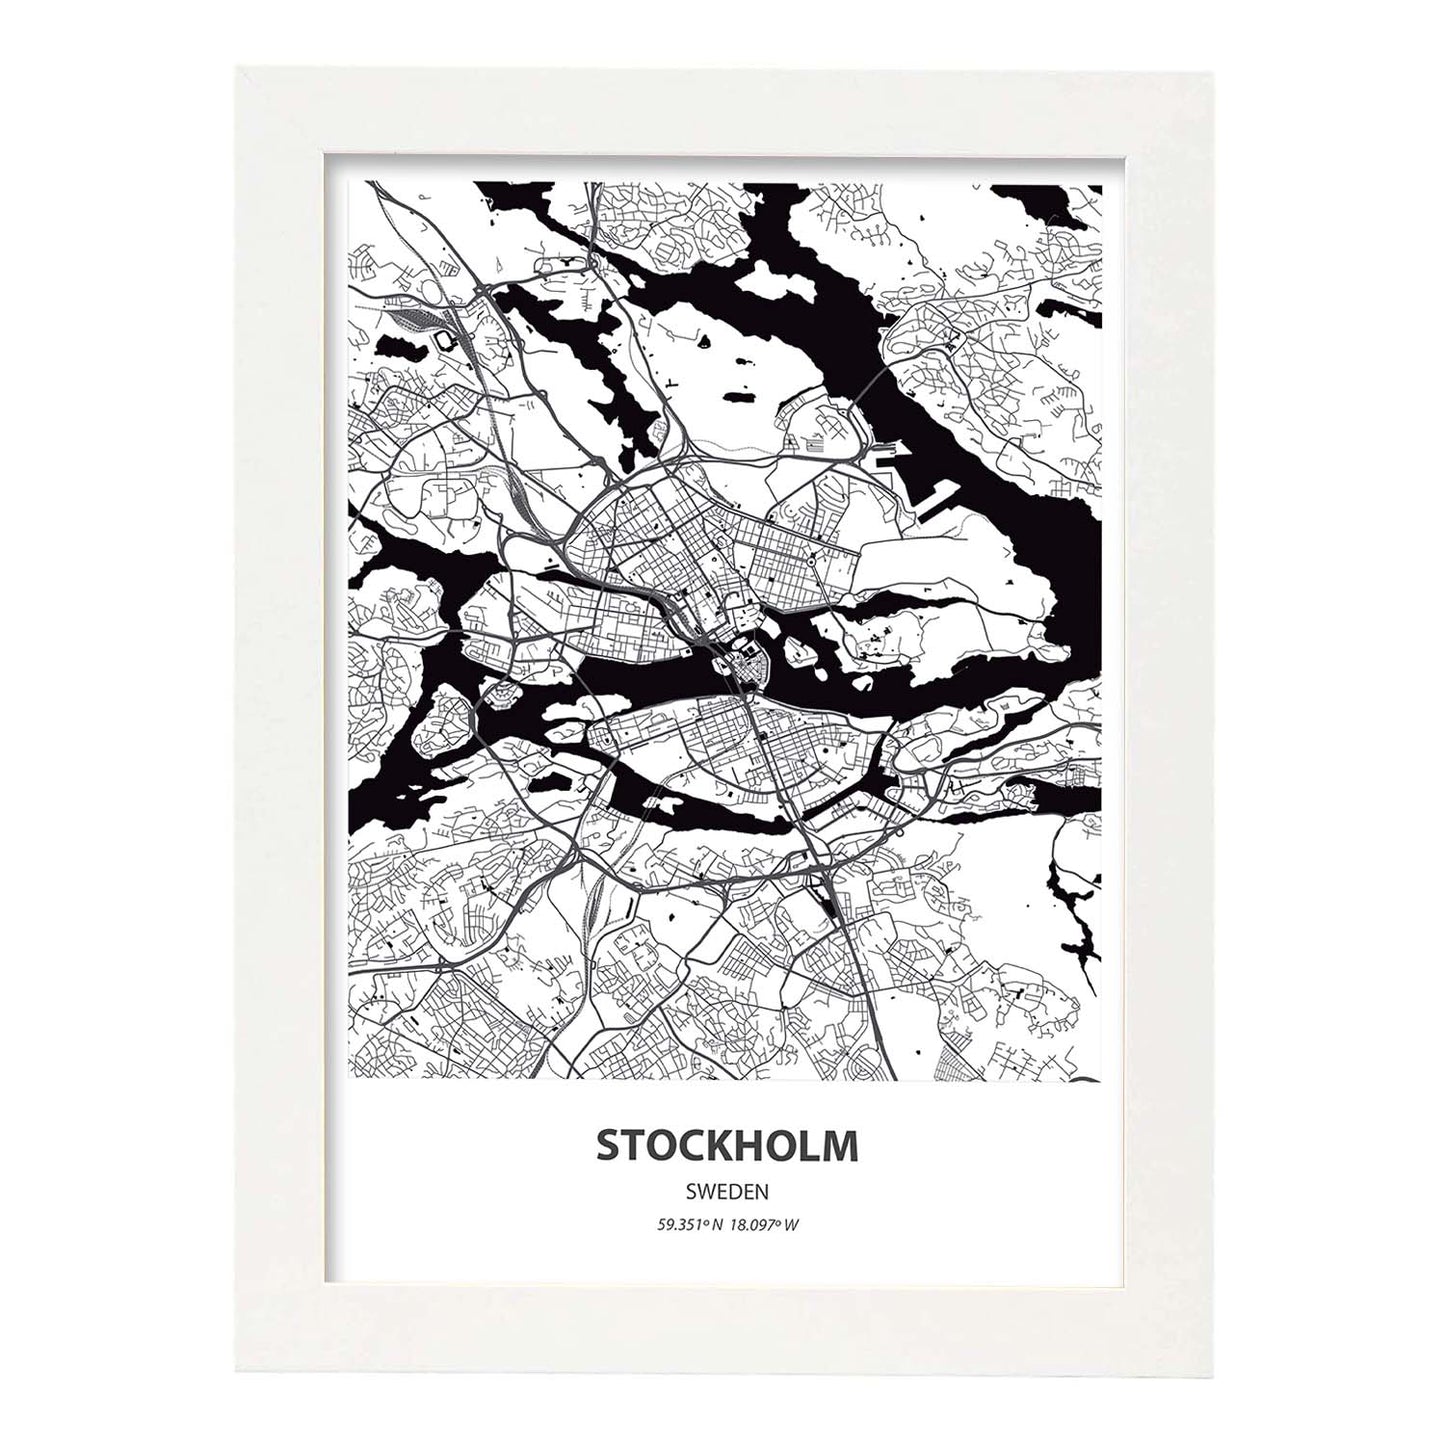 Poster con mapa de Stockholm - Suecia. Láminas de ciudades del norte de Europa con mares y ríos en color negro.-Artwork-Nacnic-A3-Marco Blanco-Nacnic Estudio SL